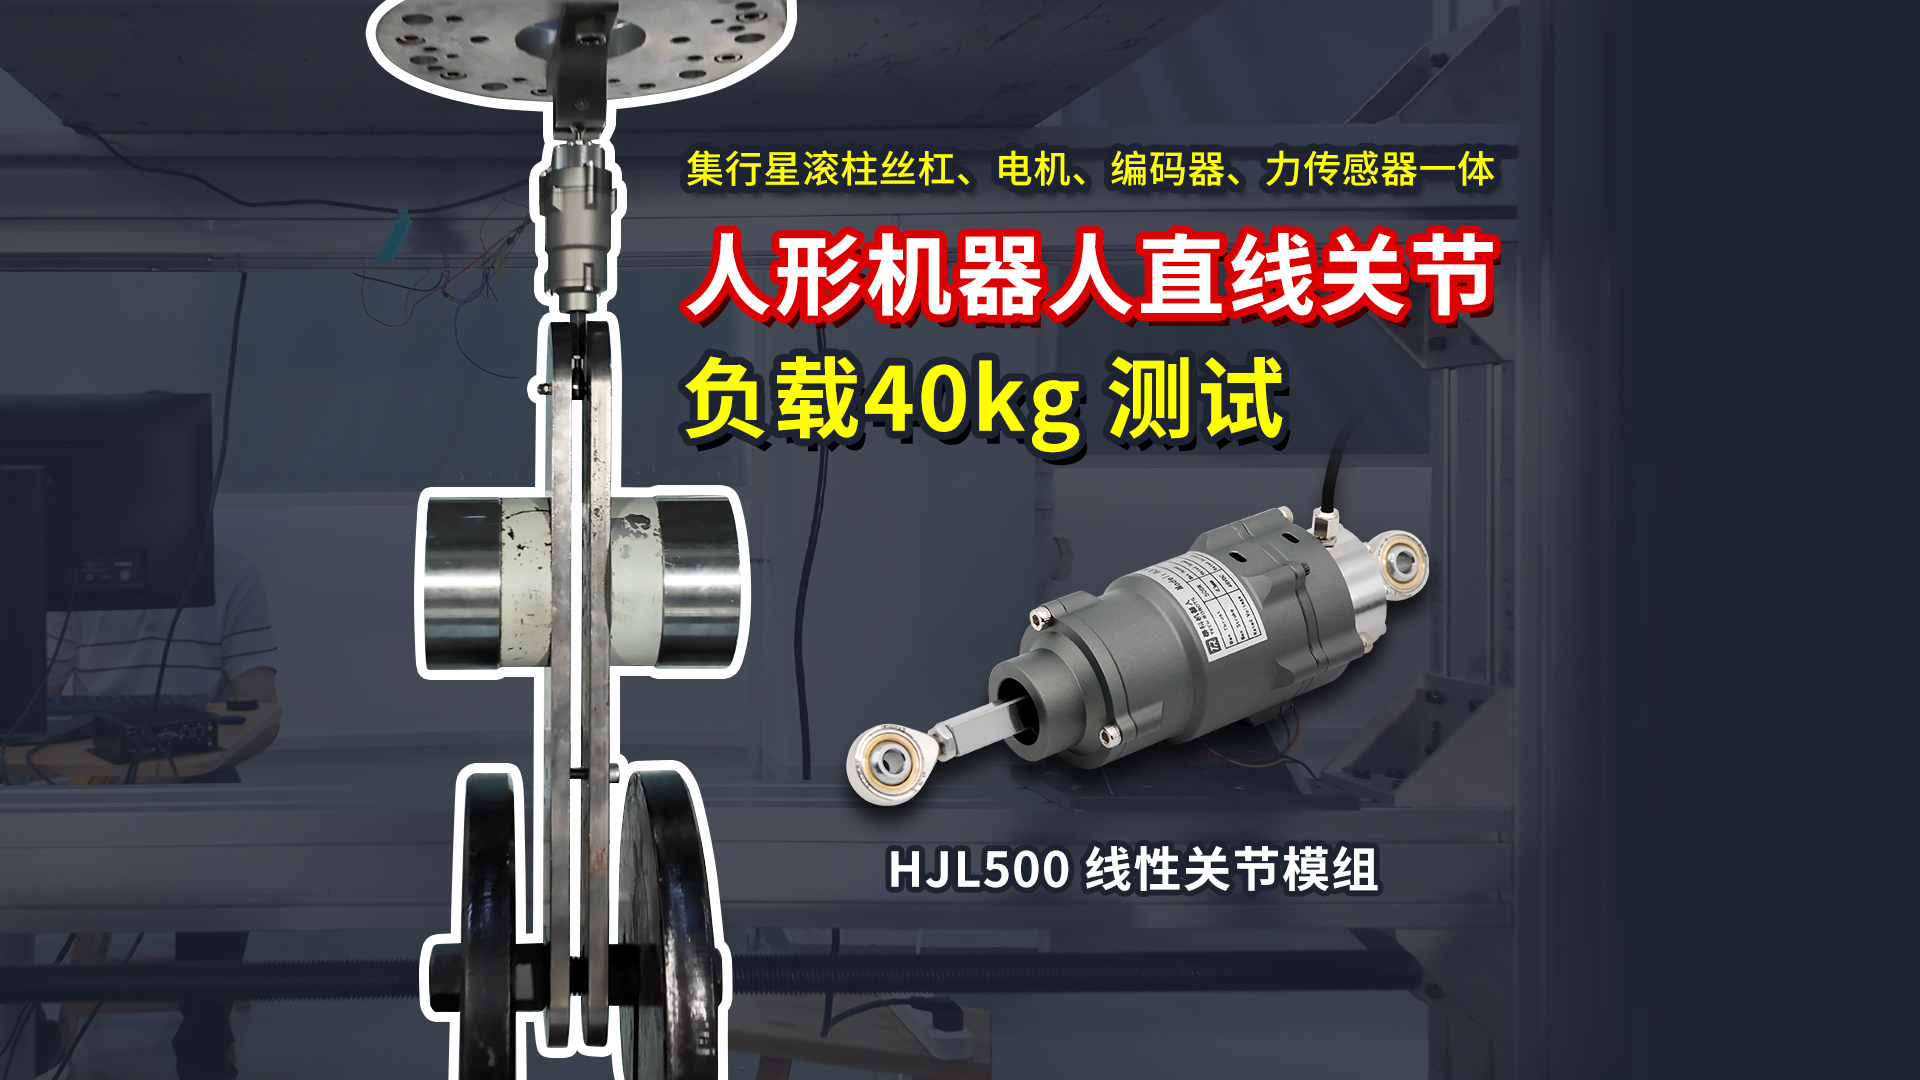 HJL500人形机器人直线关节负载40公斤测试 | 泰科机器人
#人形机器人关节 #关节模组 